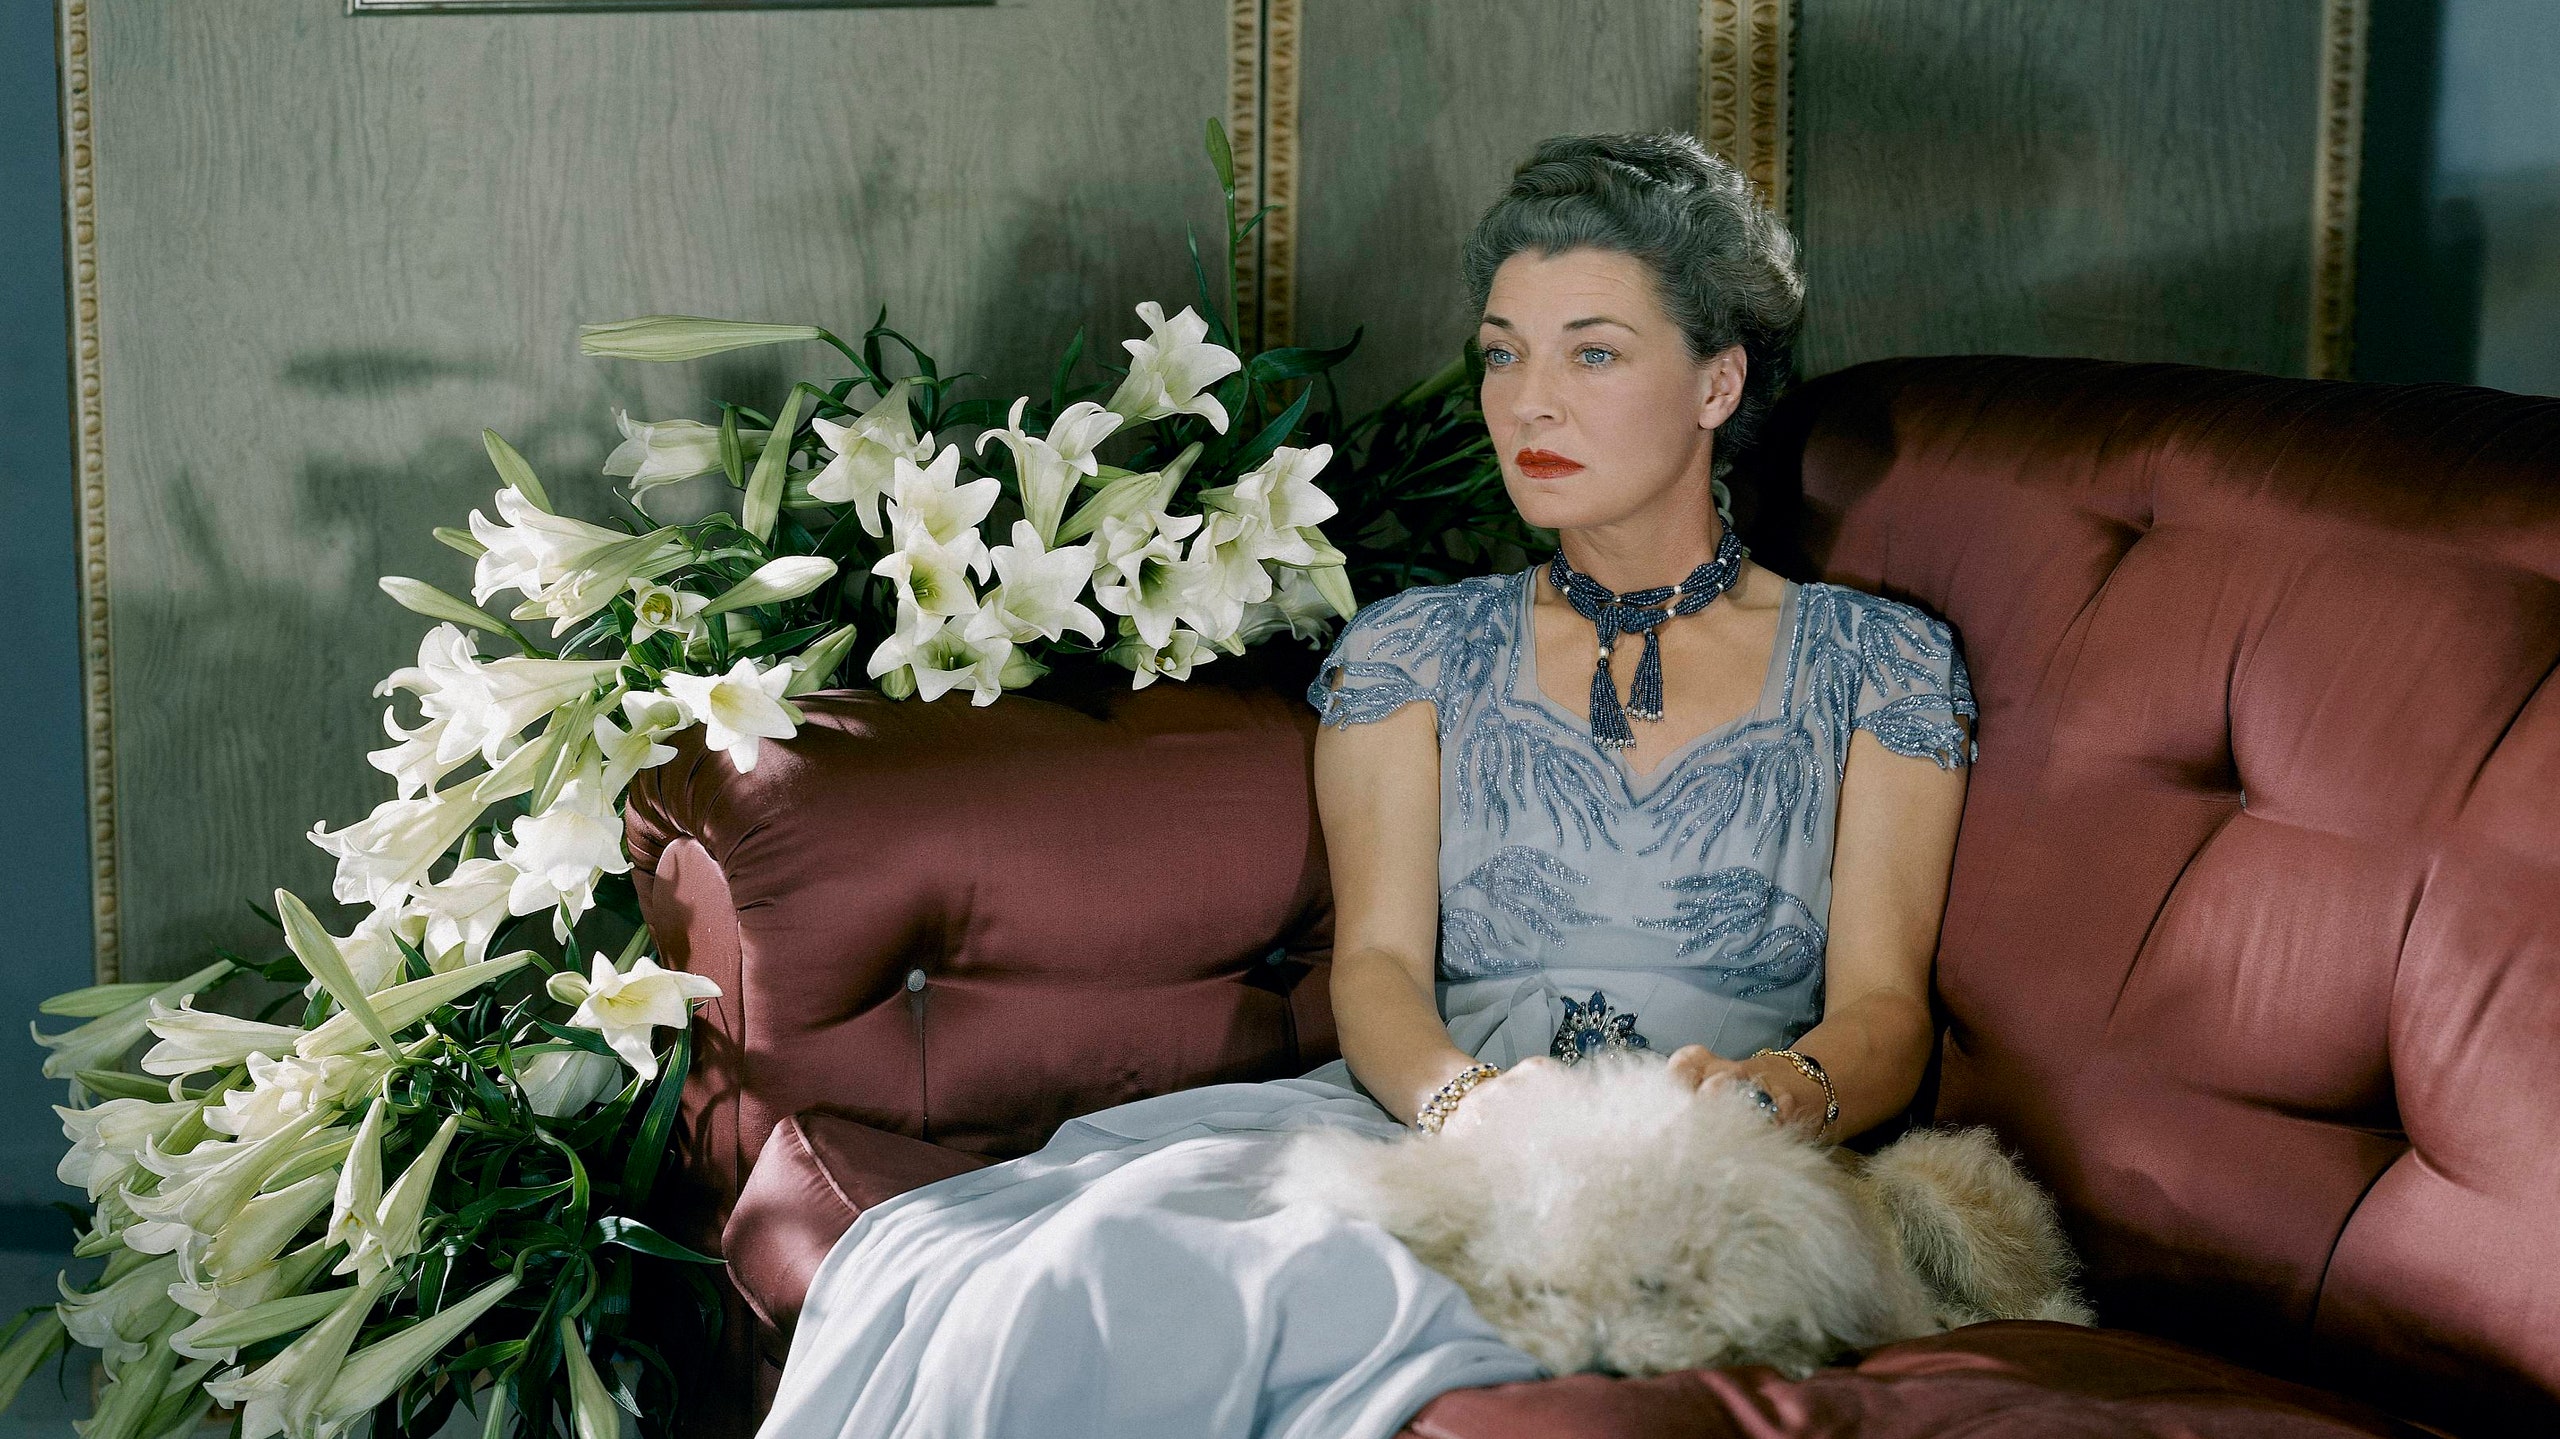 Мона фон Бисмарк — графиня которую Коко Шанель считала самой модной женщиной в мире